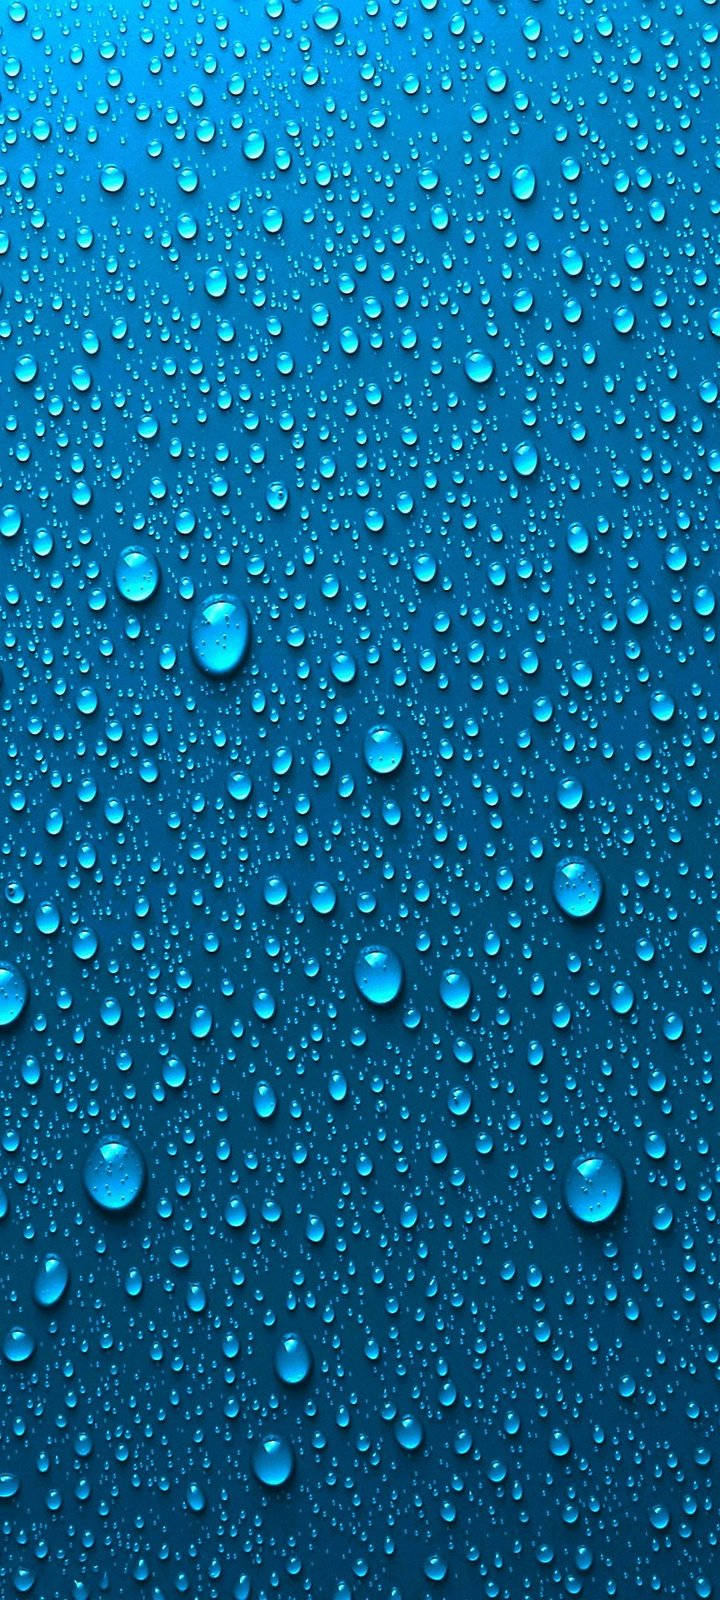 Vivo Y20 Blue Water Droplets